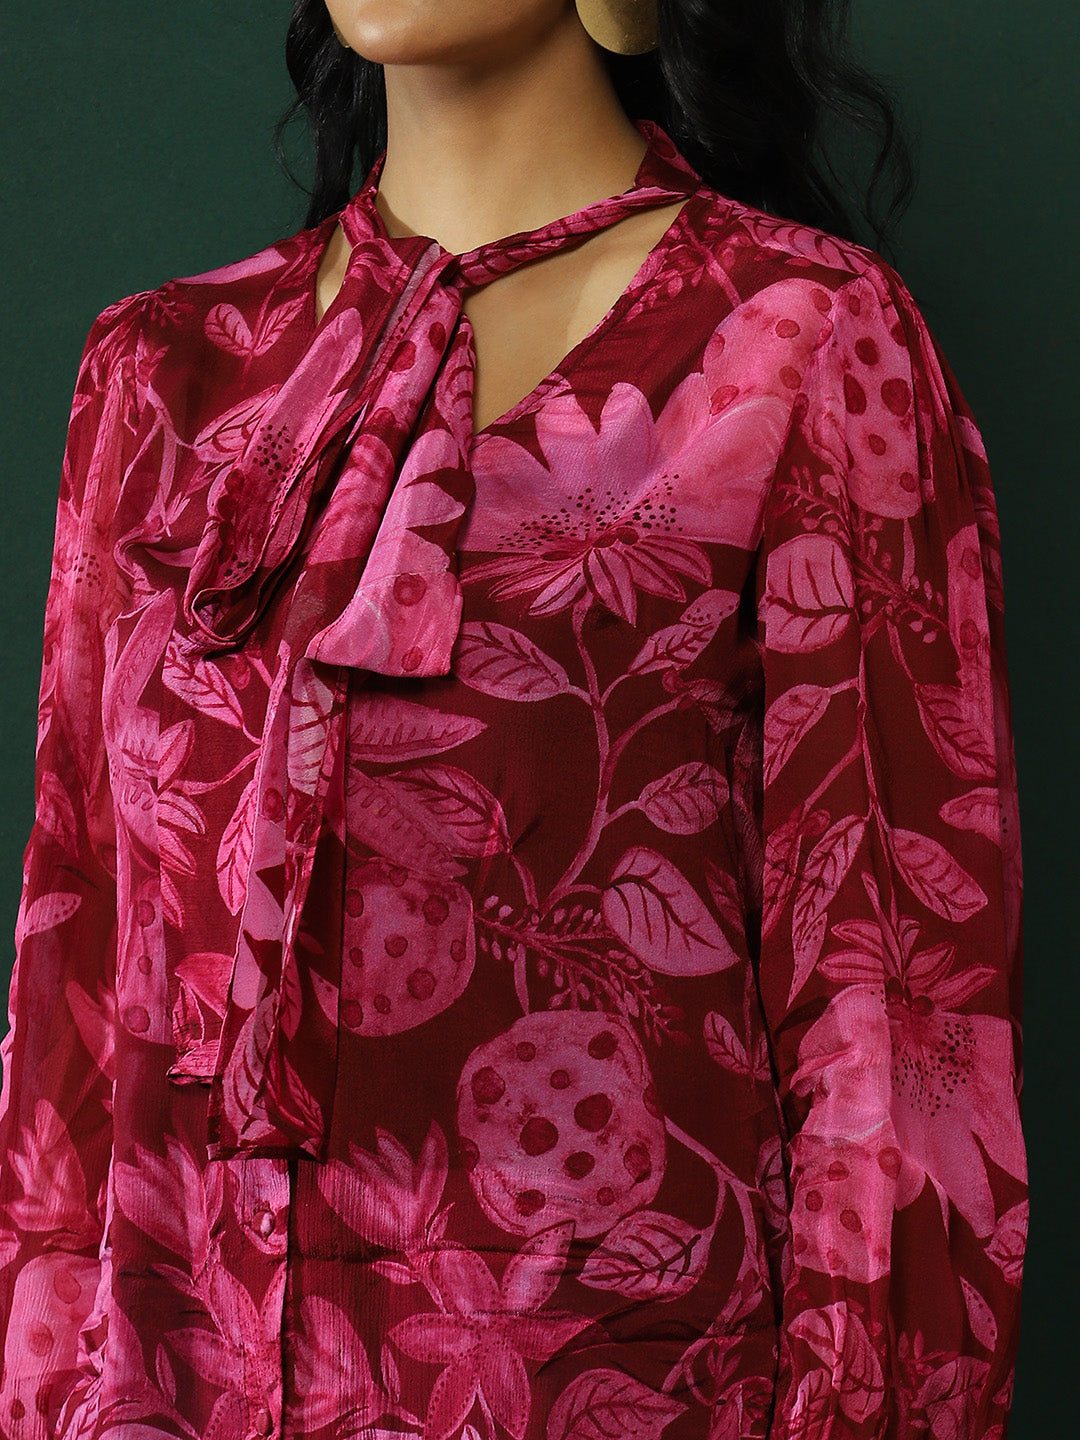 Burgundy Floral Print Shirt